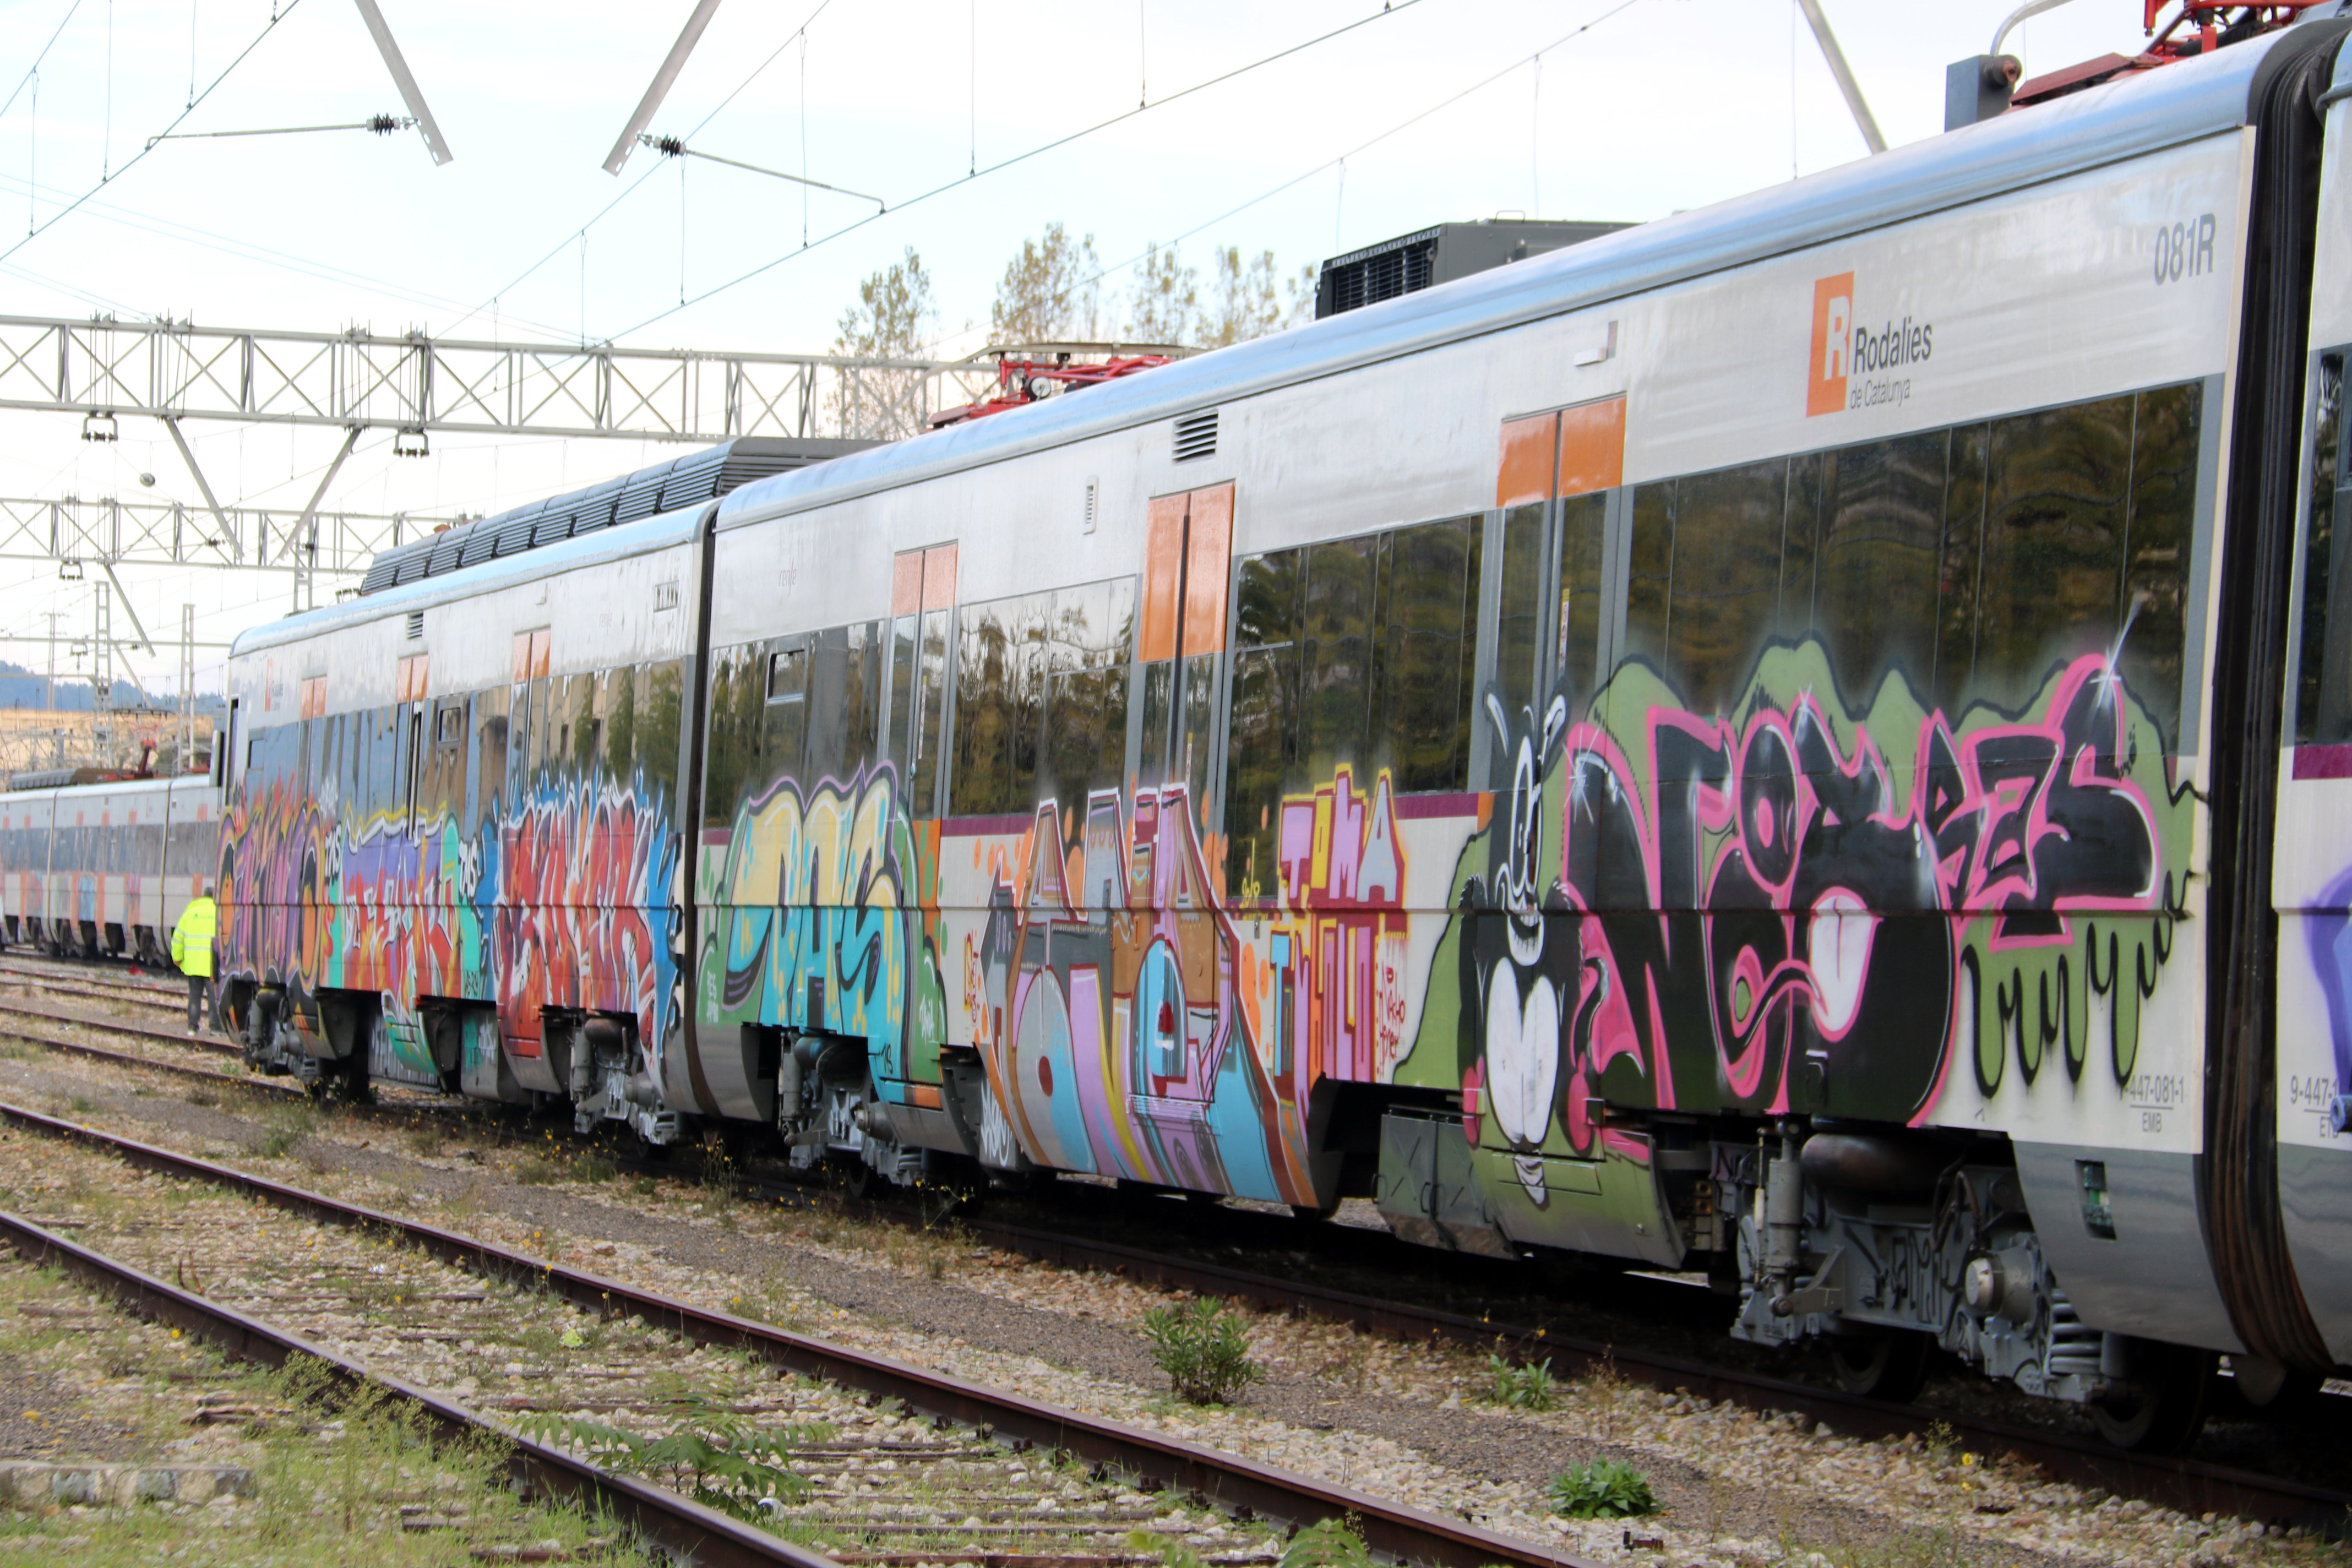 Vagons del tren accidentat a Vacarisses apareixen plens de pintades